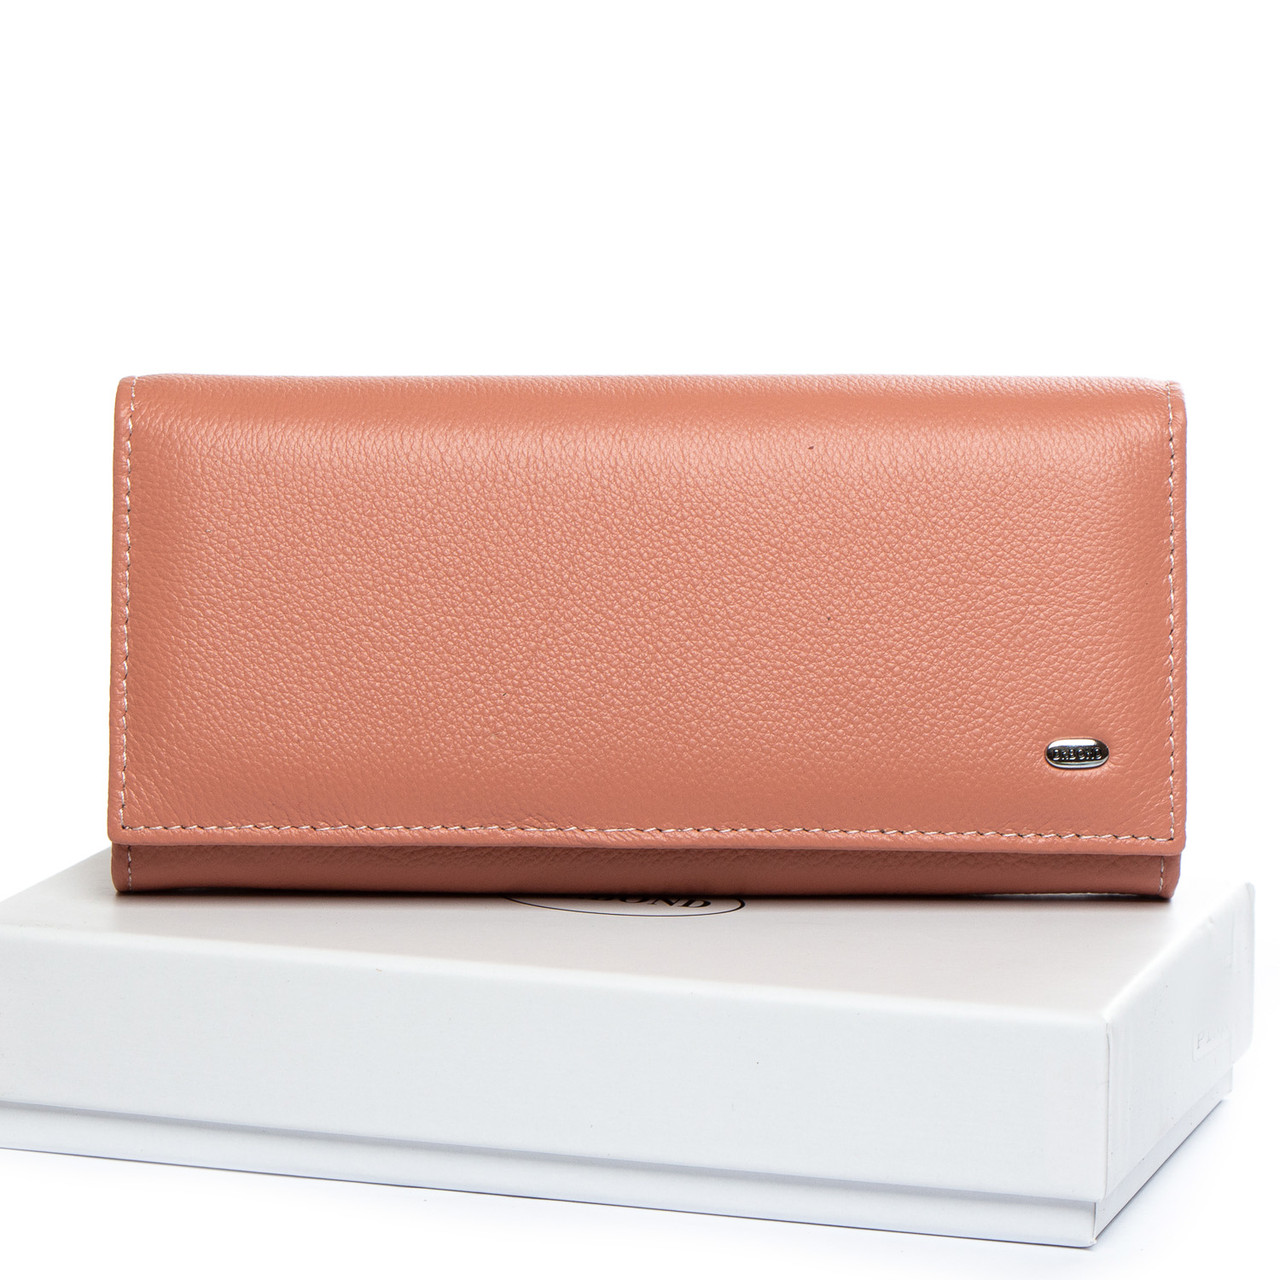 Жіночий шкіряний гаманець DR. BOND W1-V-2 pink.Купити жіночий шкіряний гаманець гуртом і в роздріб в Україні.